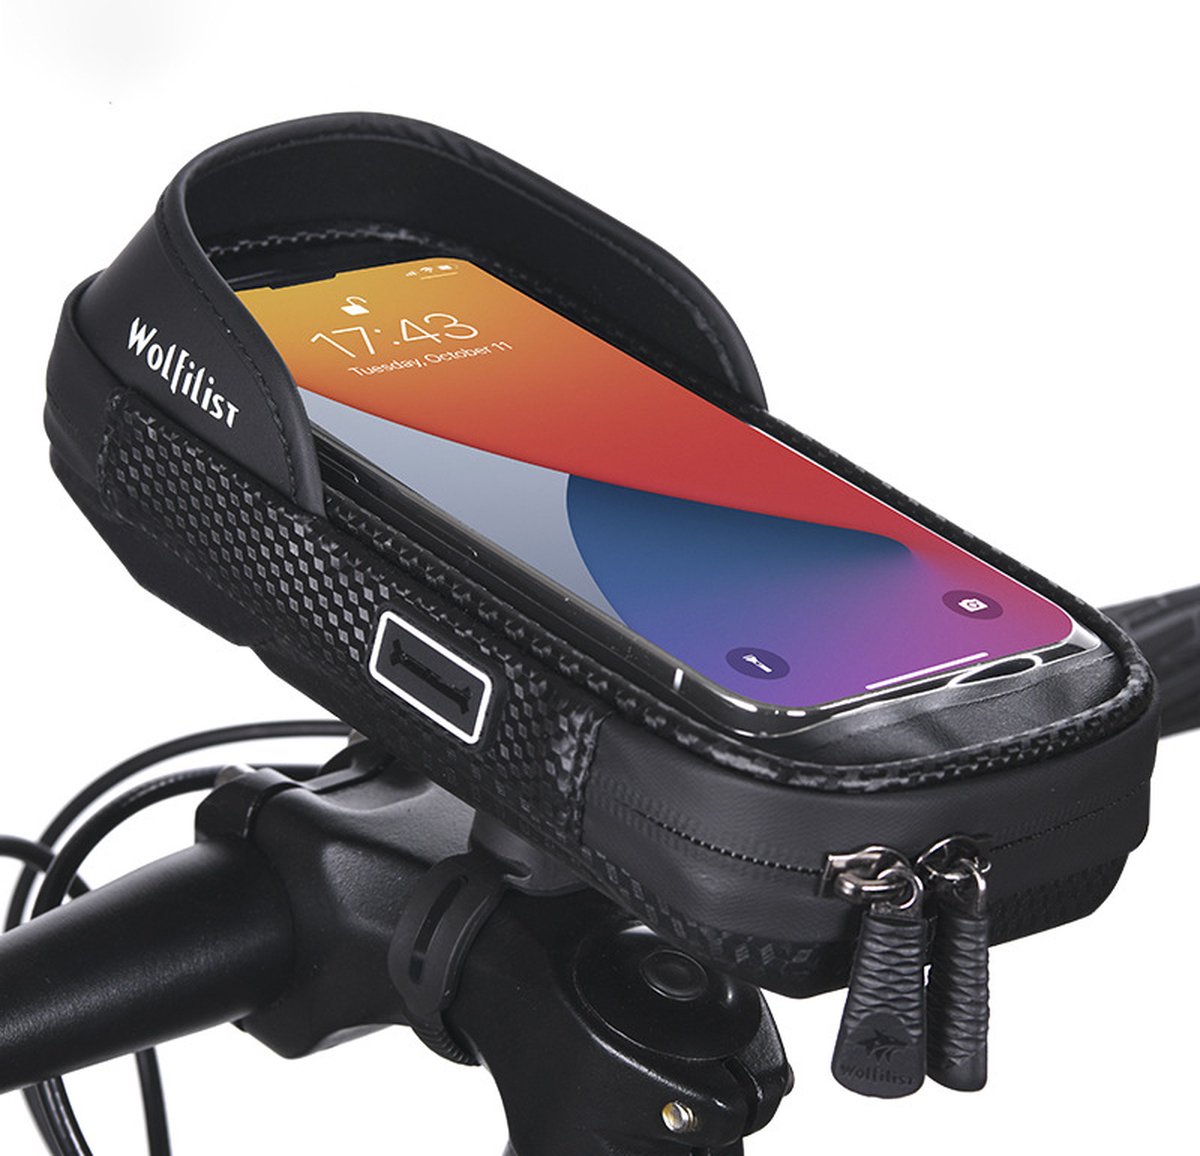 Andyou-fietshouder voor mobiele telefoons - draaibaar ontwerp - waterdichte tas voor mobiele telefoons - geschikt voor fietsen, motorfietsen, elektrische voertuigen enz. - geschikt voor mobiele telefoons onder de 6.5 inch